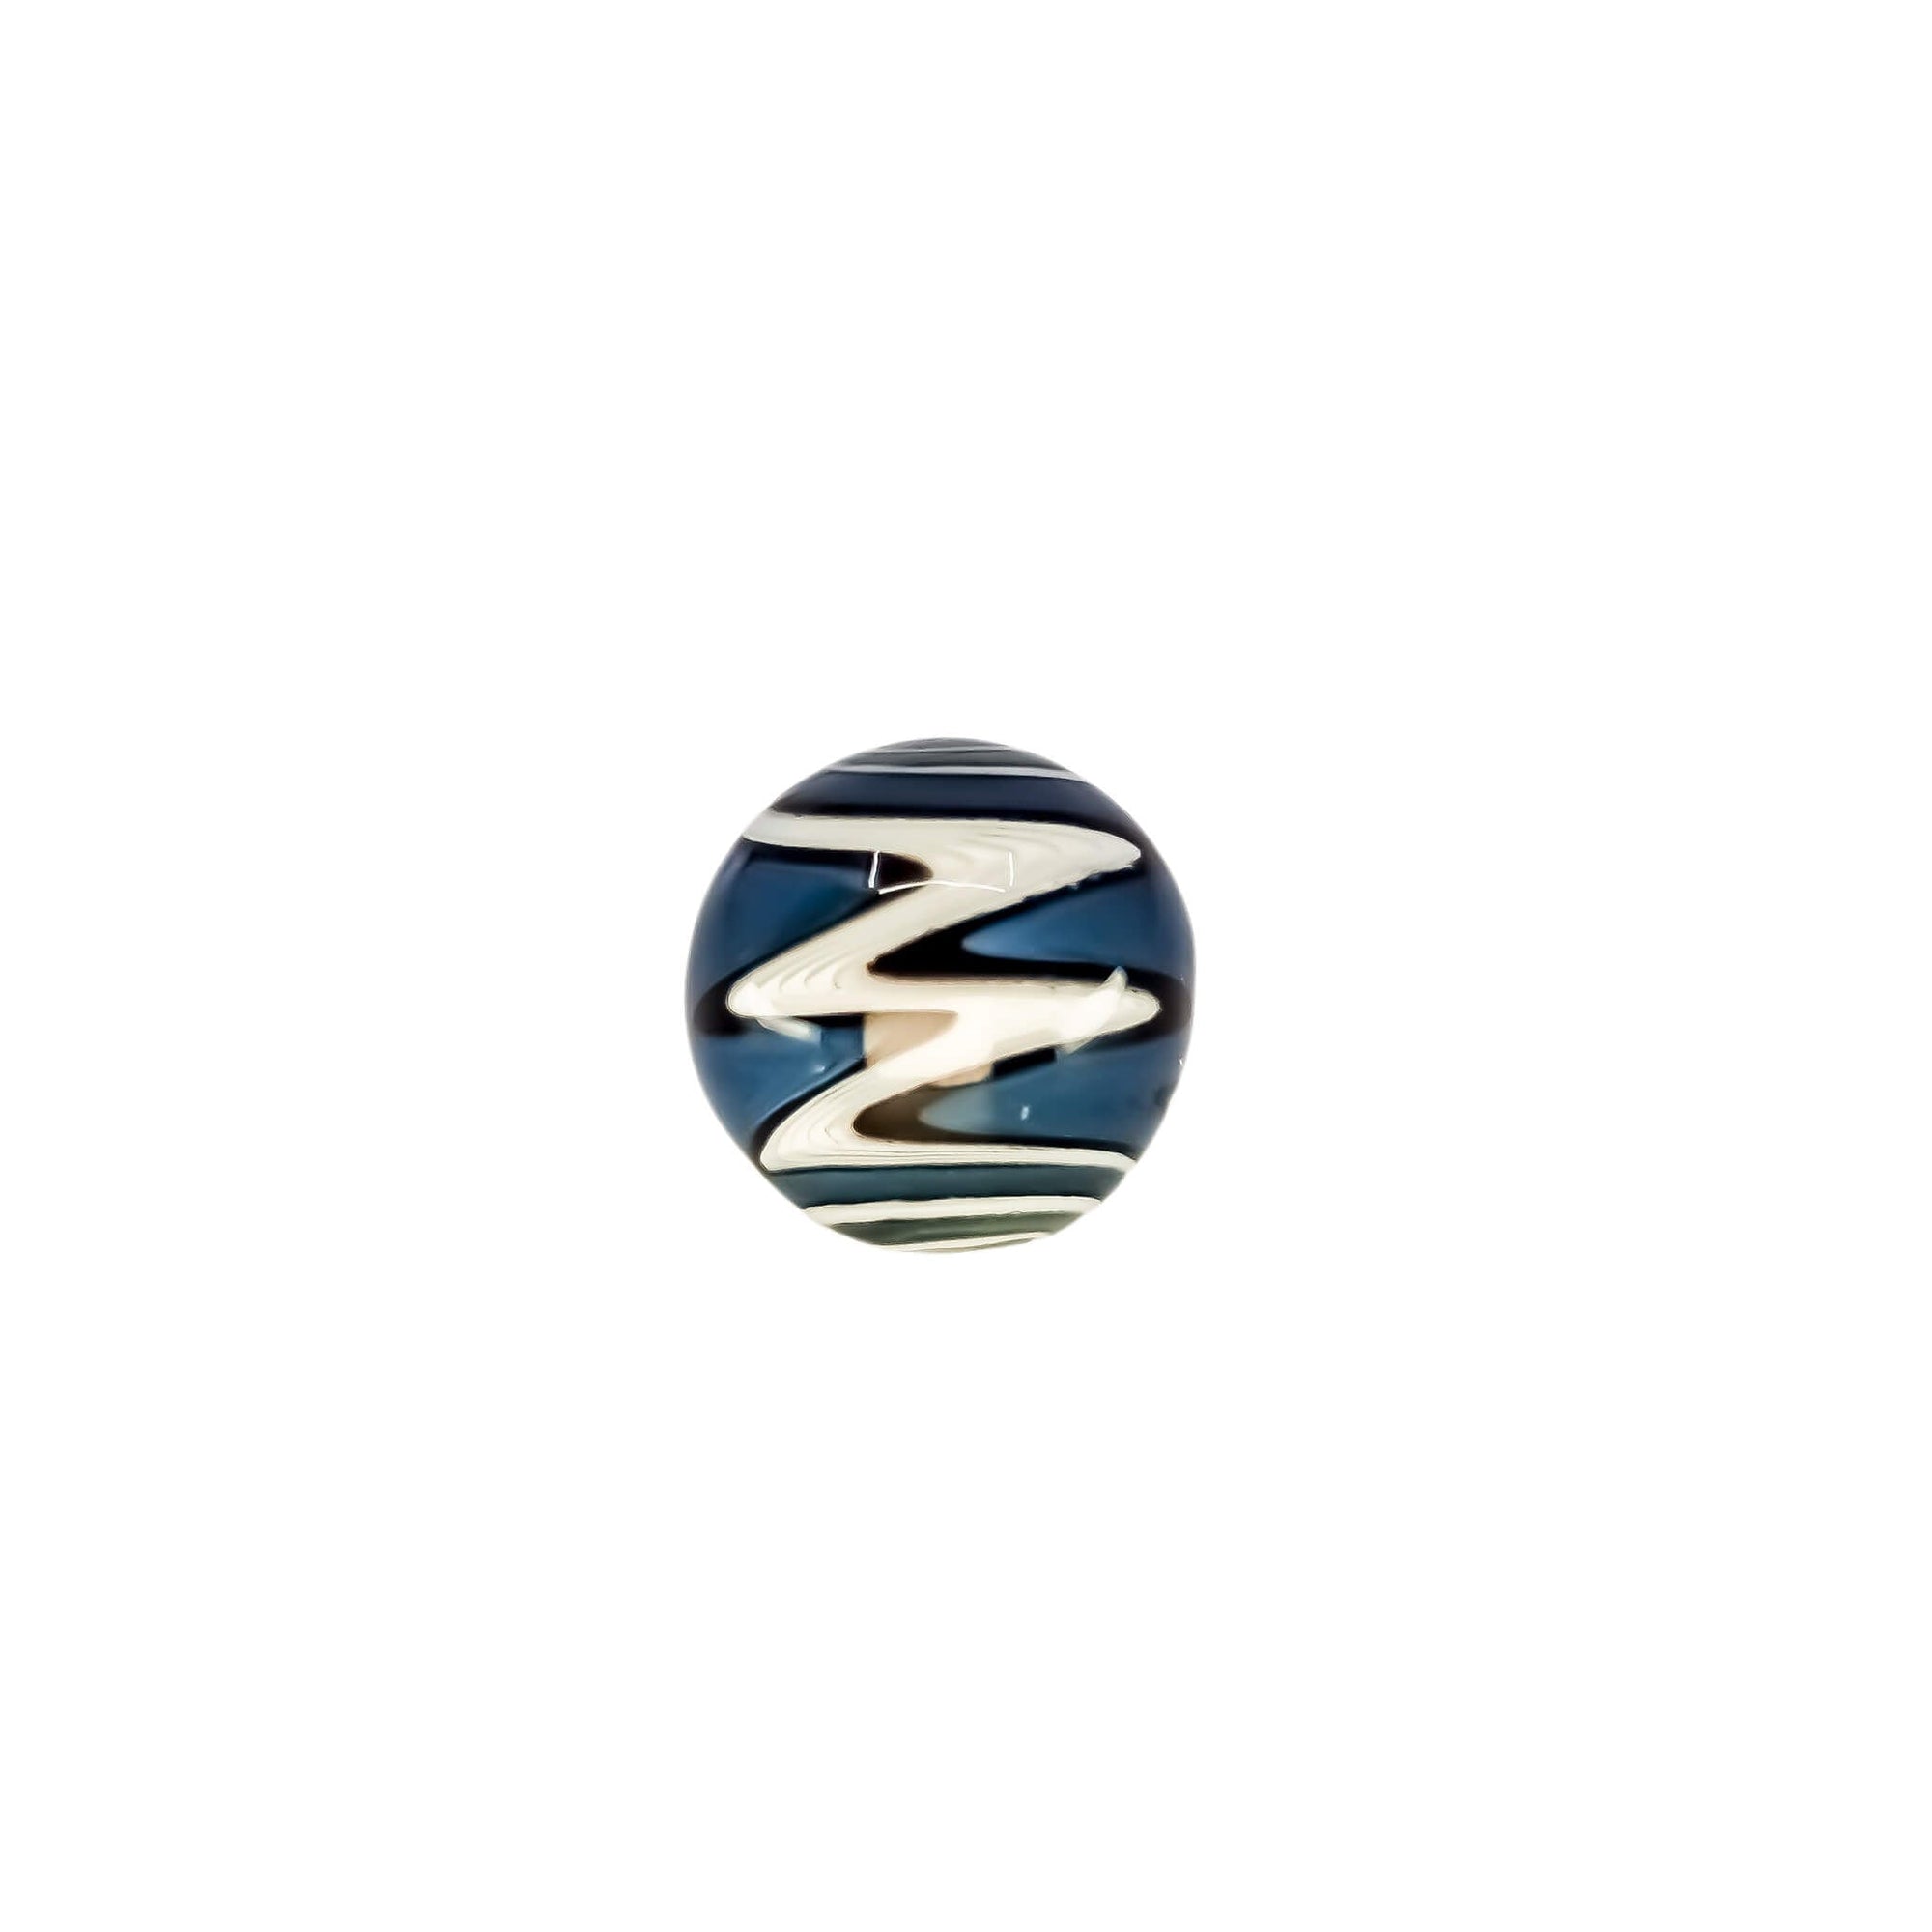 Wig Wag Terp Slurper Marble | Blue/Black/White Colorway View On Slurper | DW